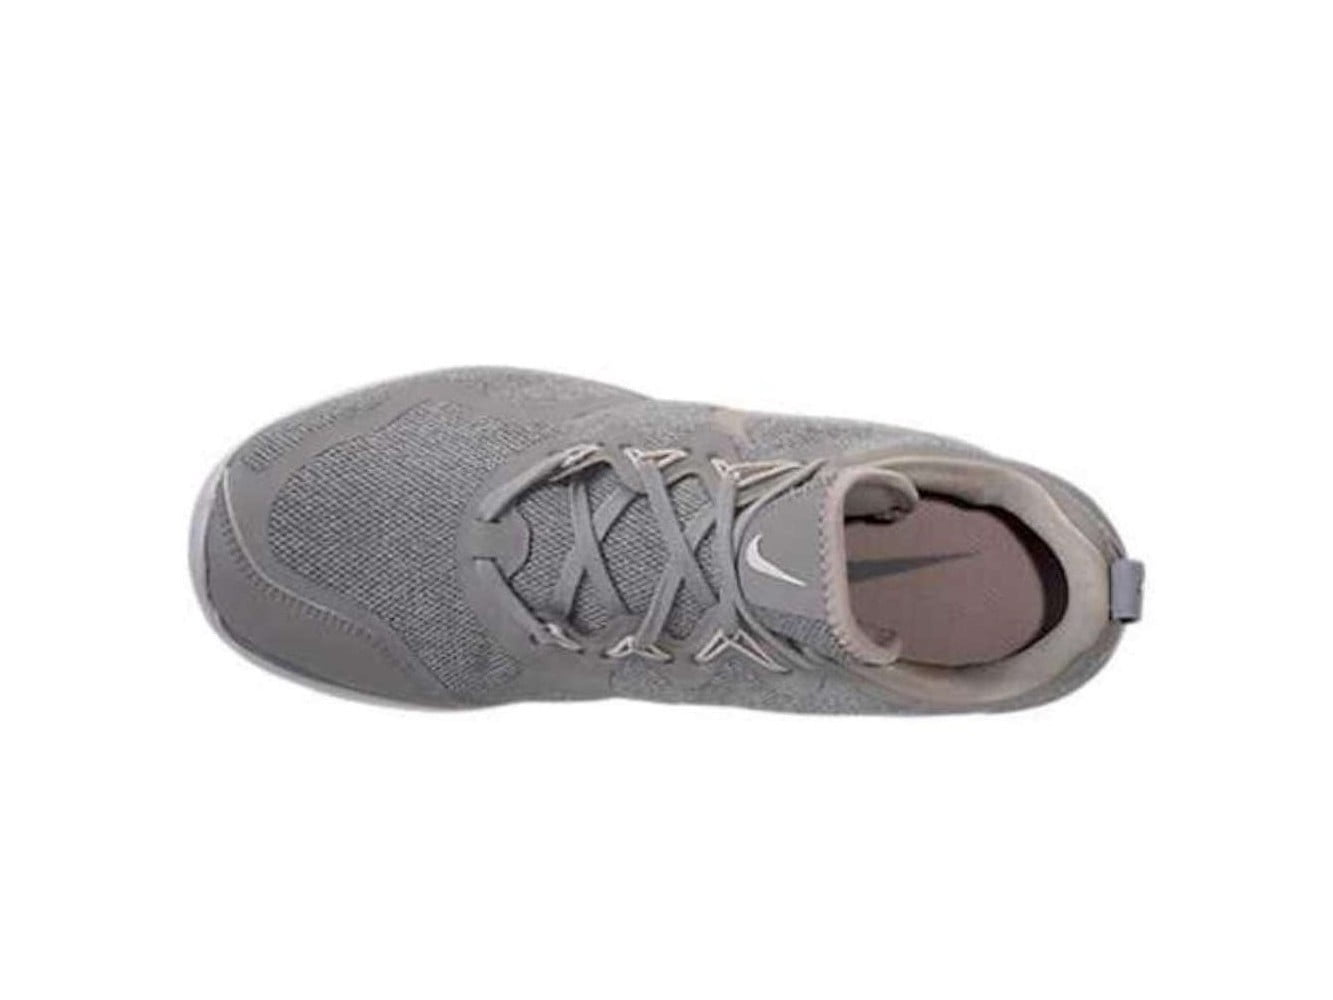 Speels Peer Machtig Nike Mens Air Max Fury Low Top Lace Up Running Sneaker - Walmart.com